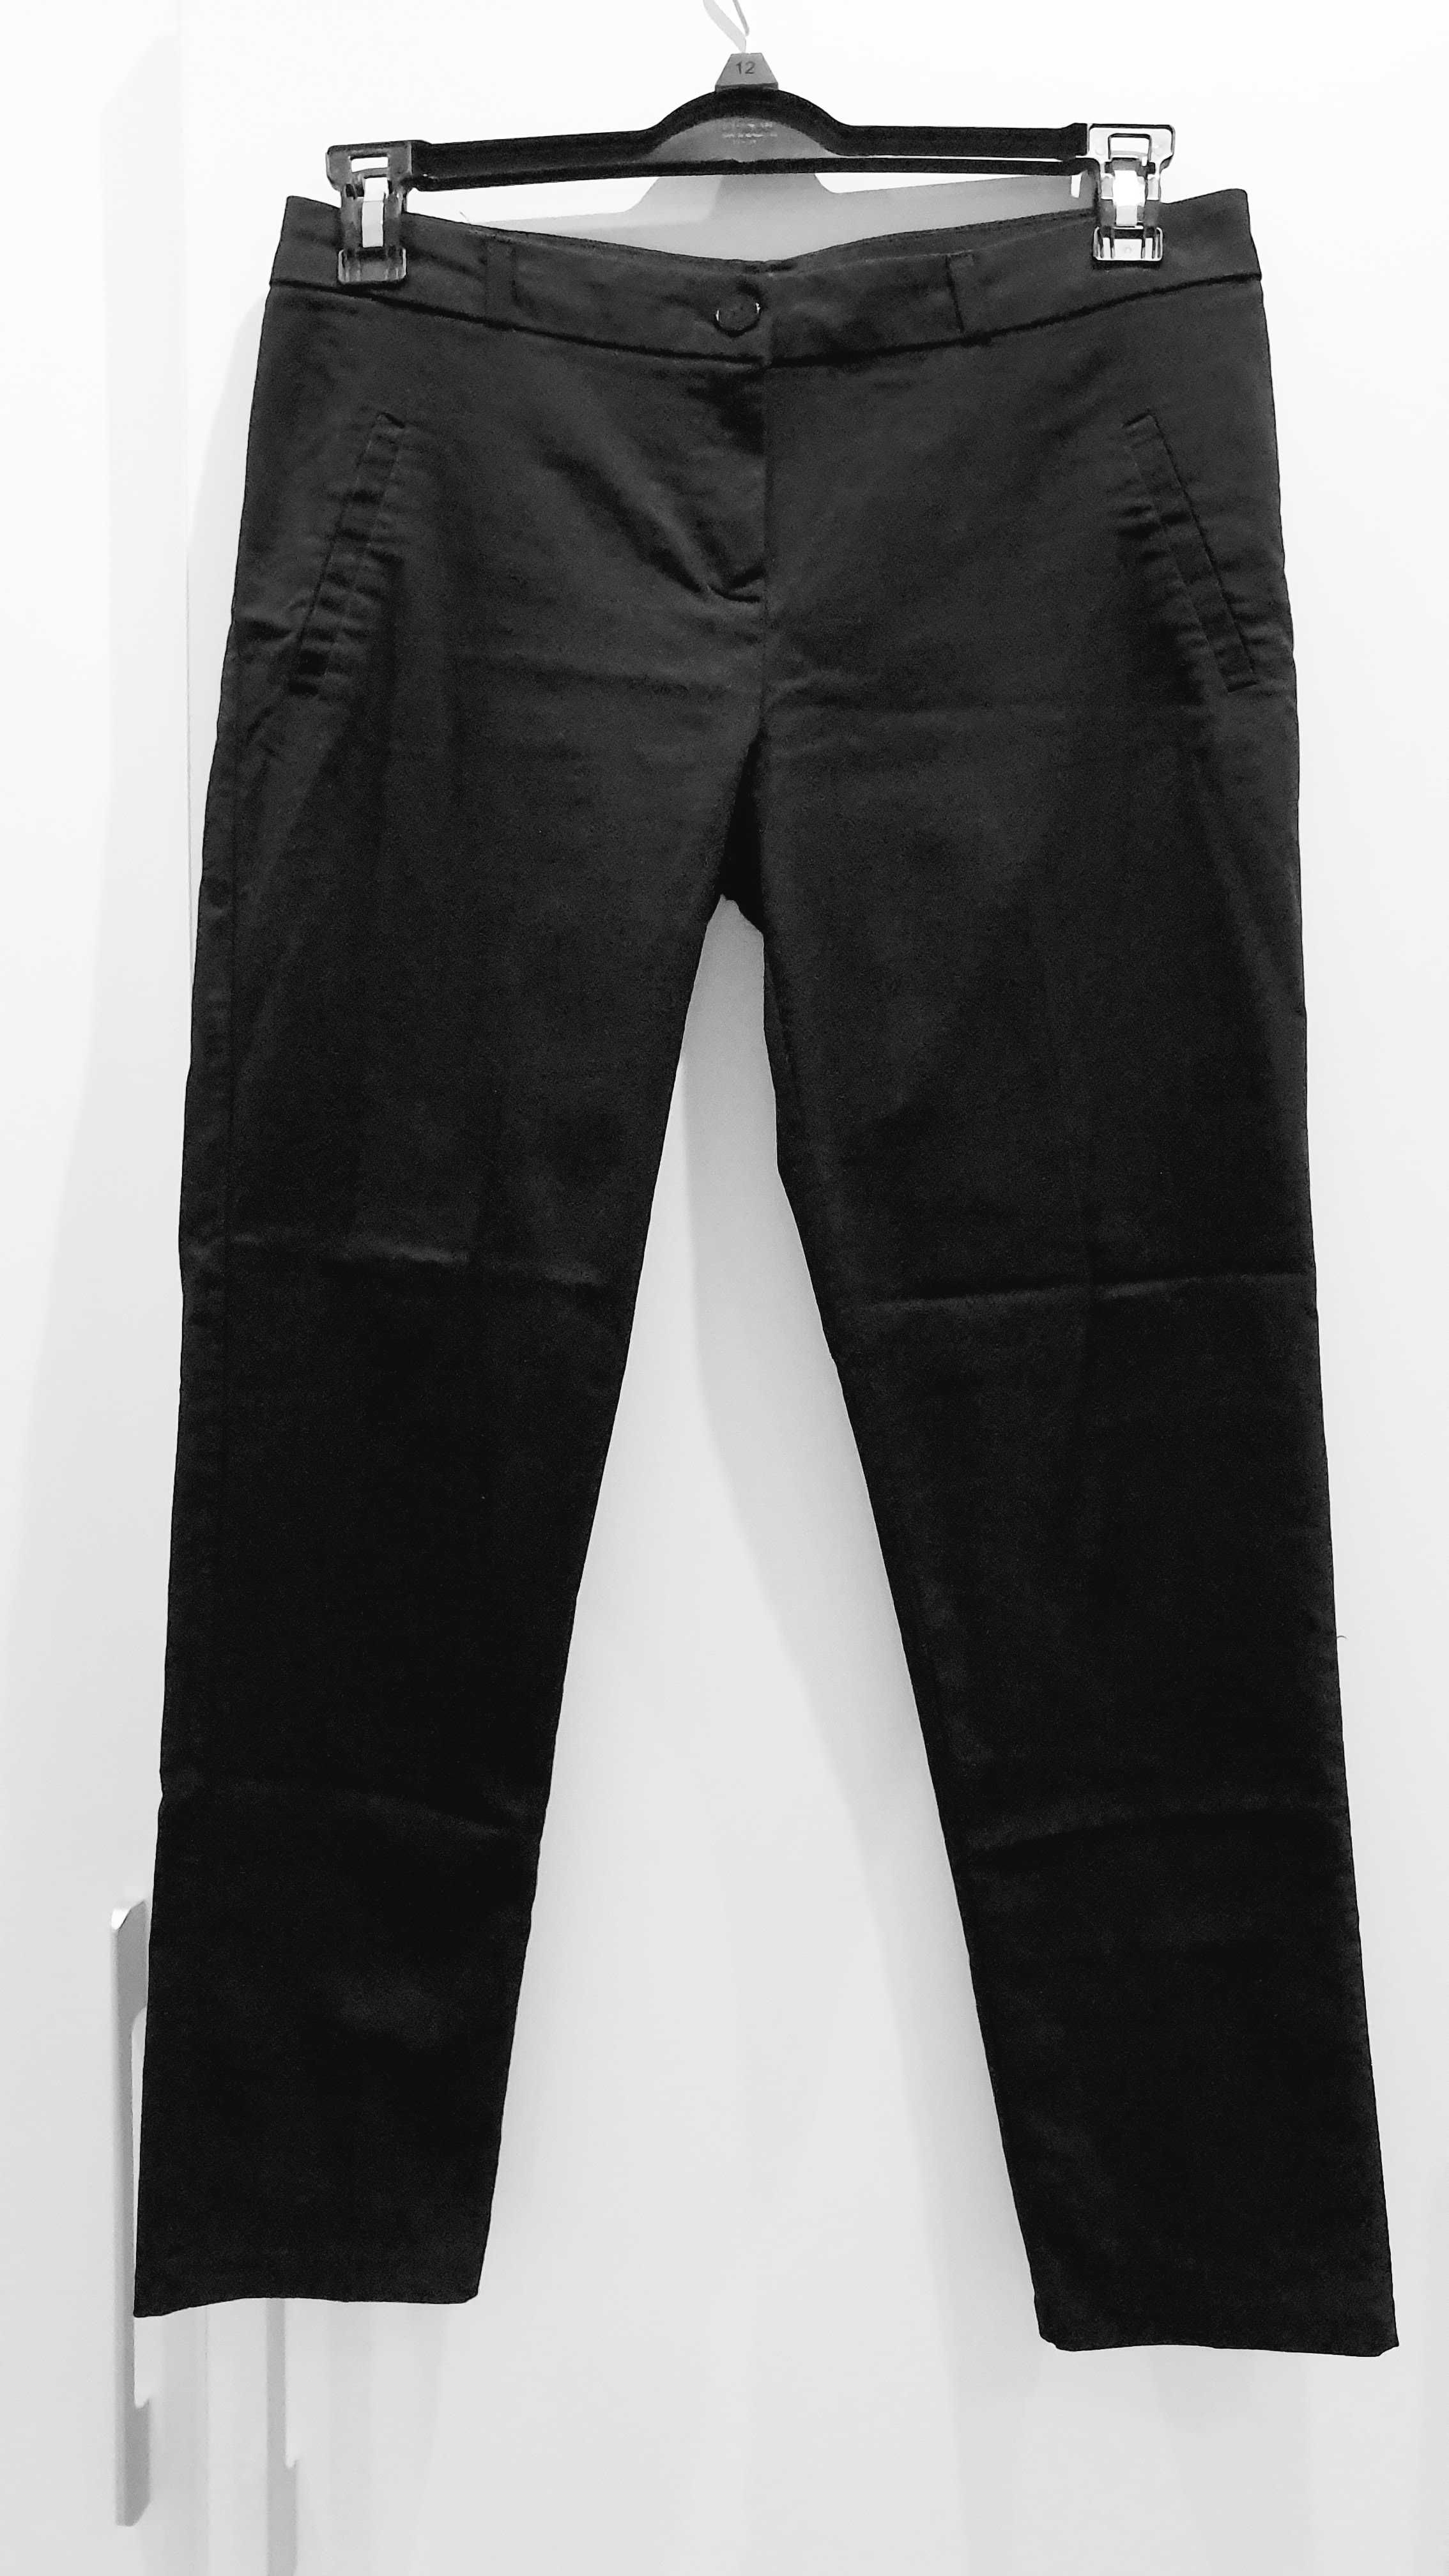 Классические брюки размера M-L производства Турции